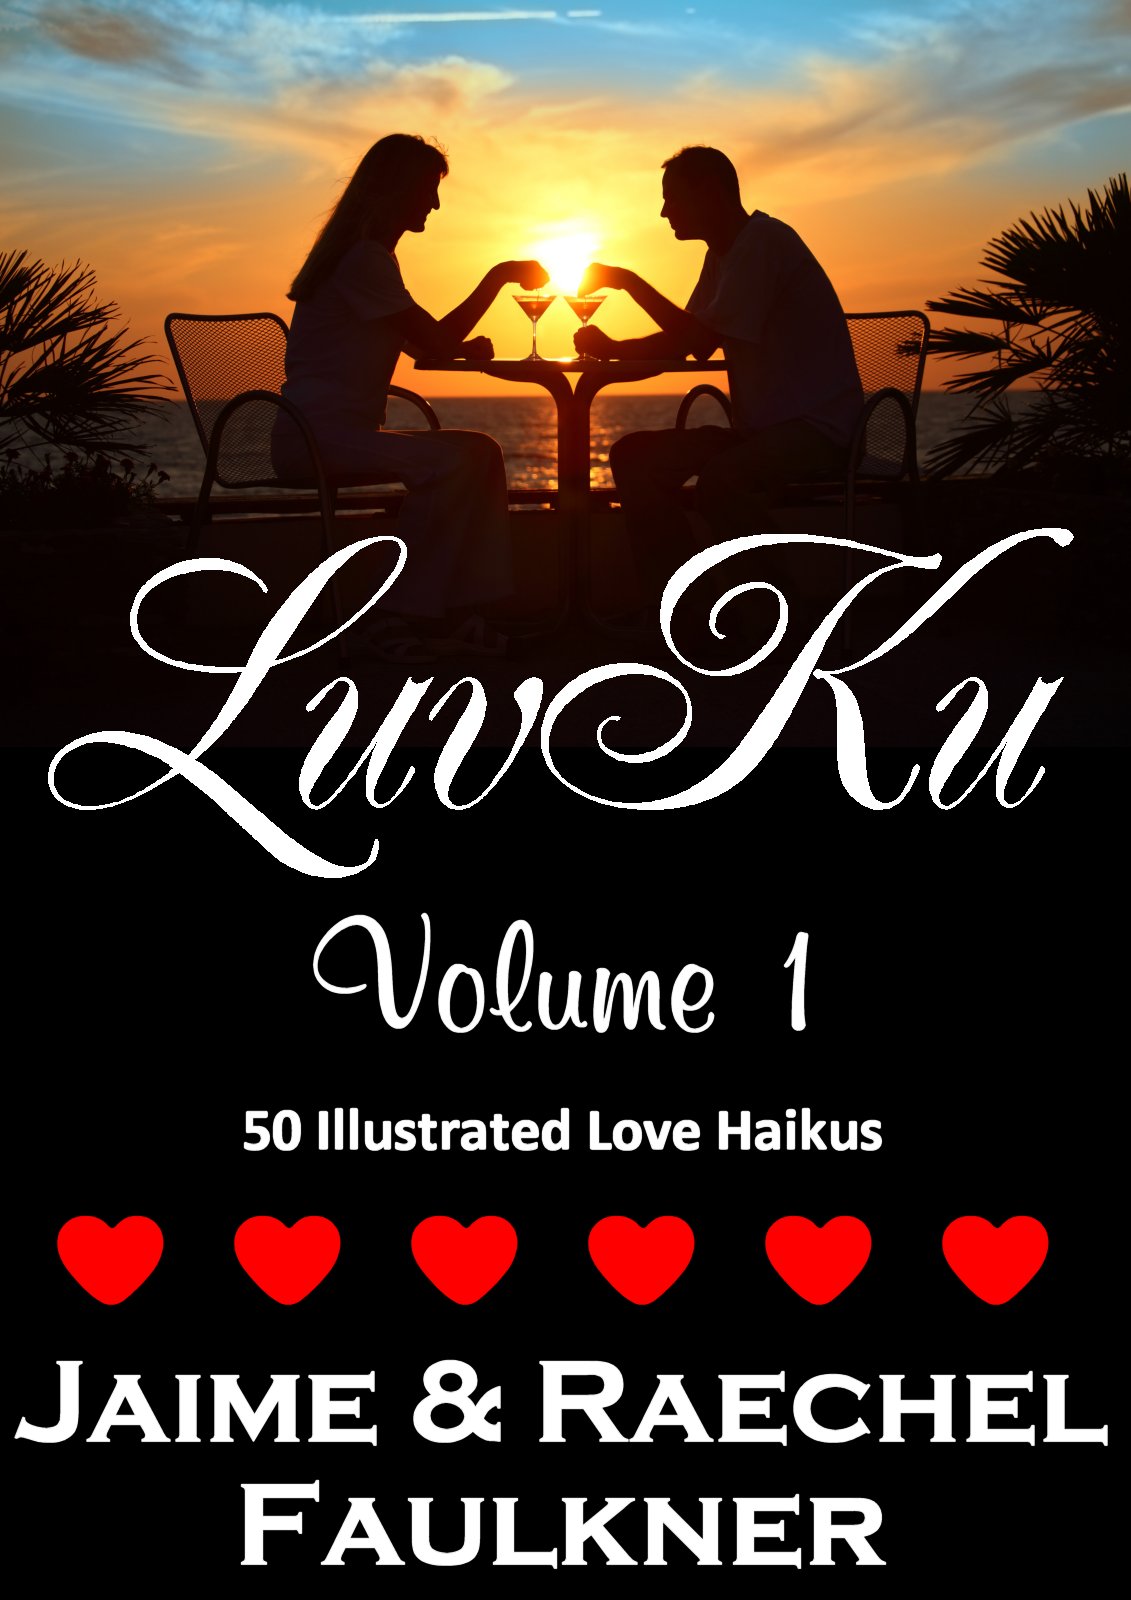 LuvKu Volume 1 by Jaime & Raechel Faulkner